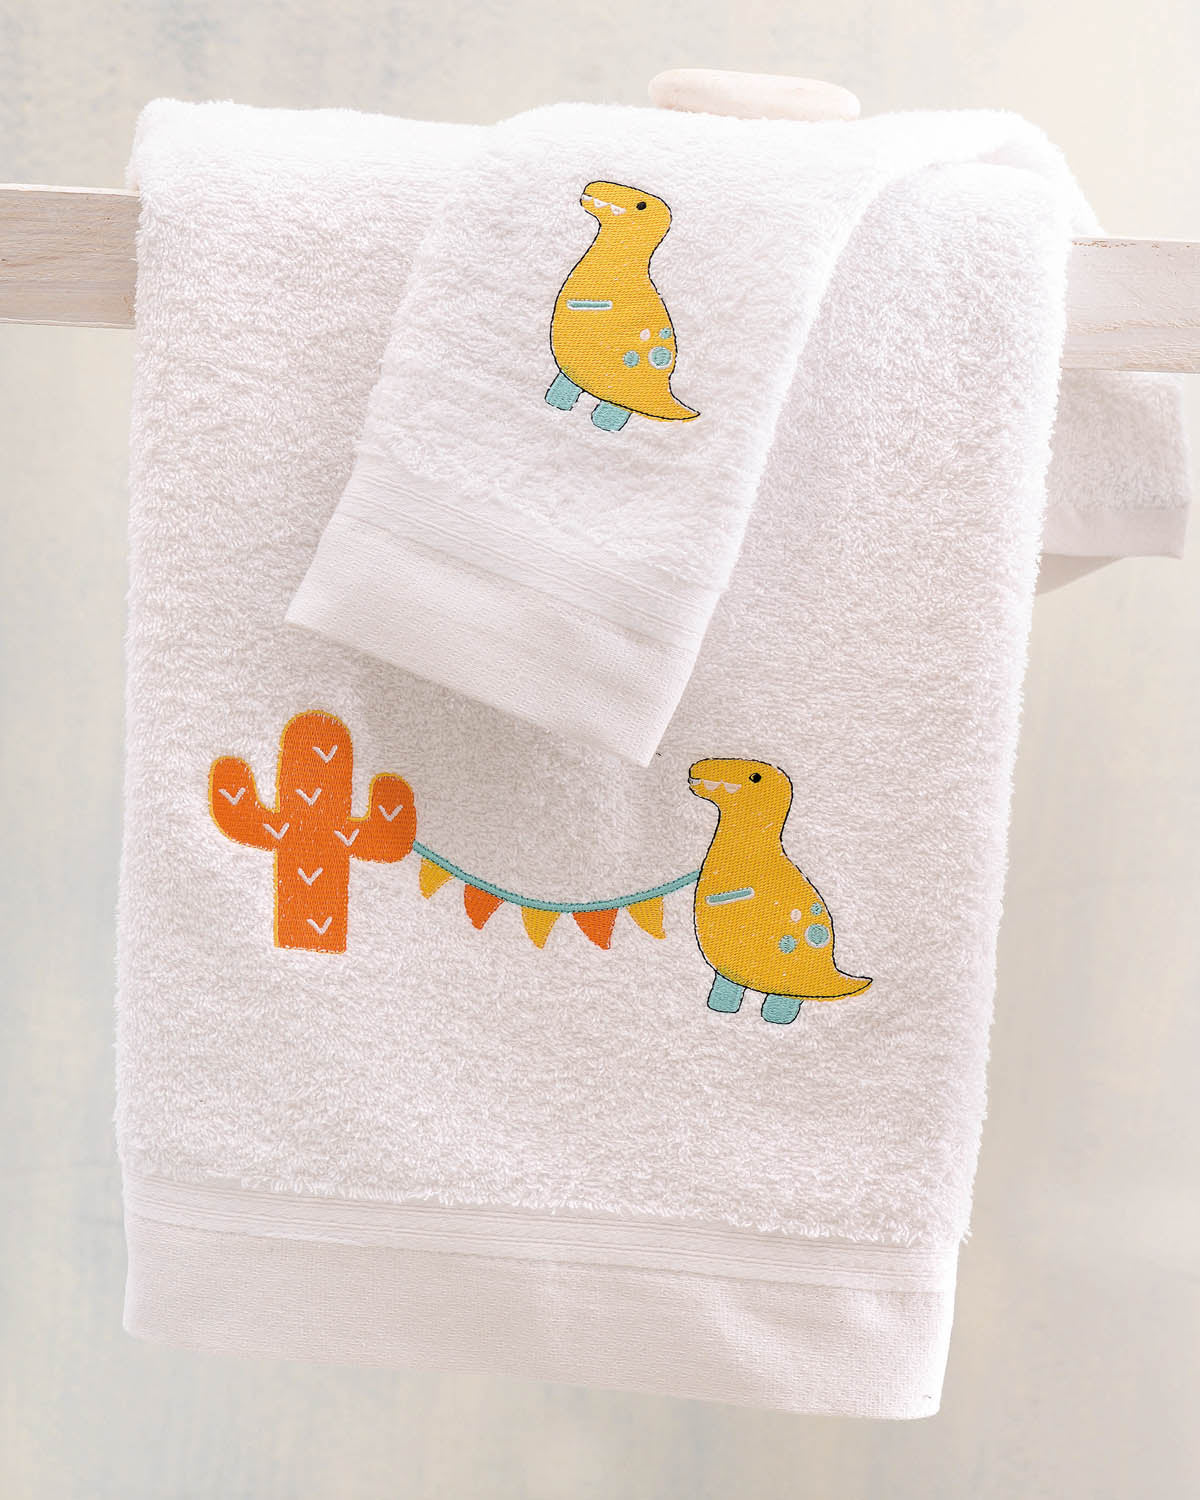 DIEGO ΚΙΤΡΙΝΟ - Σετ πετσέτες παιδικές 2 τεμ. από την εταιρεία Rythmos Home